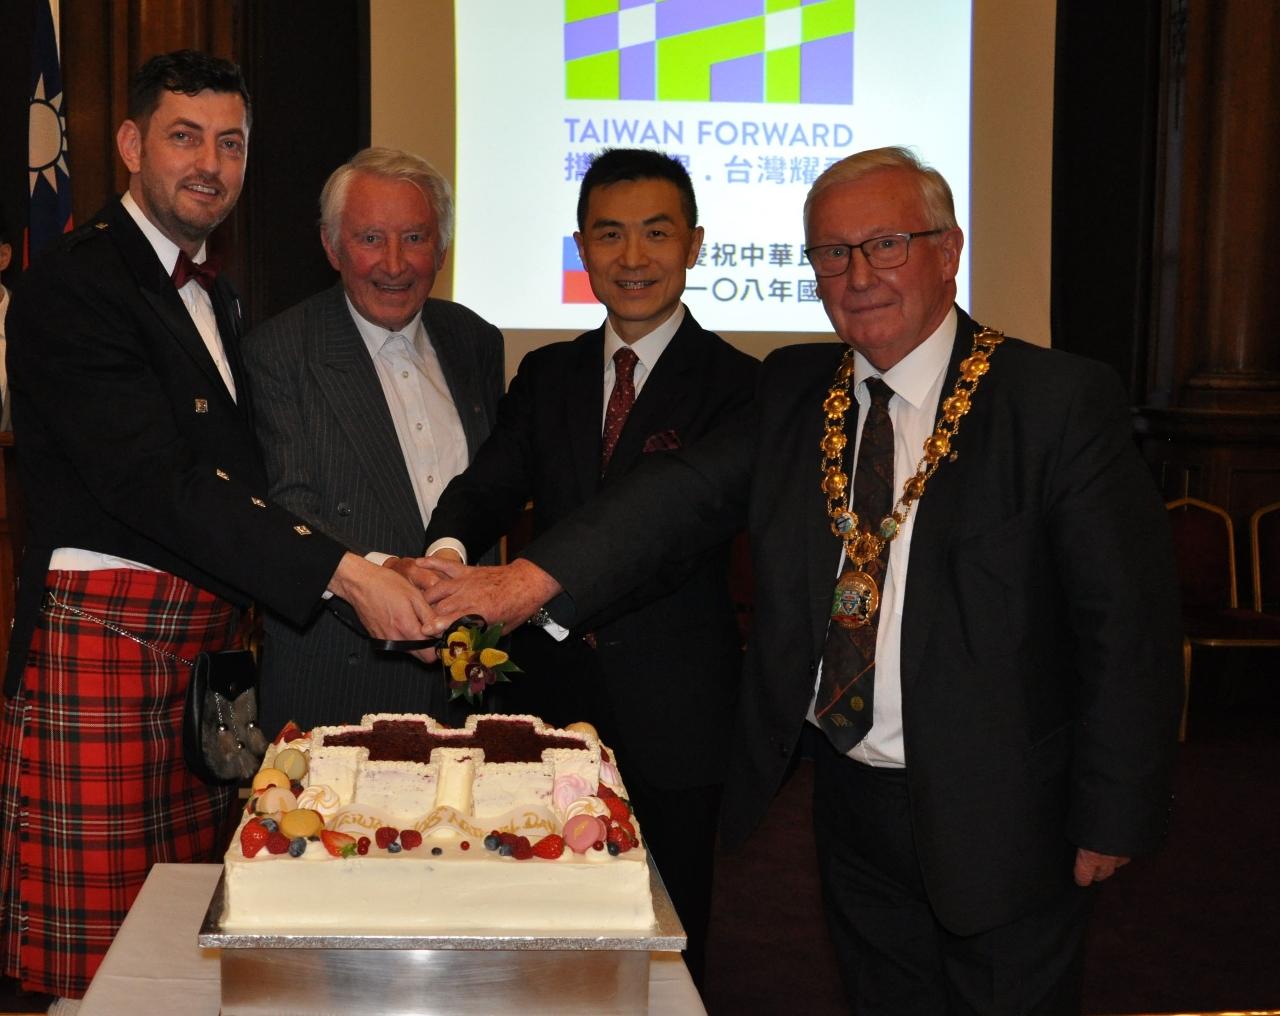 蘇格蘭西洛錫安市市長柯爾（右1）、愛丁堡辦事處處長連建辰（右2）、前英國國會友台小組共同主席上議院議員史蒂爾勳爵（左2）及愛丁堡市議會副議長戴伊（左1）合切國慶蛋糕。